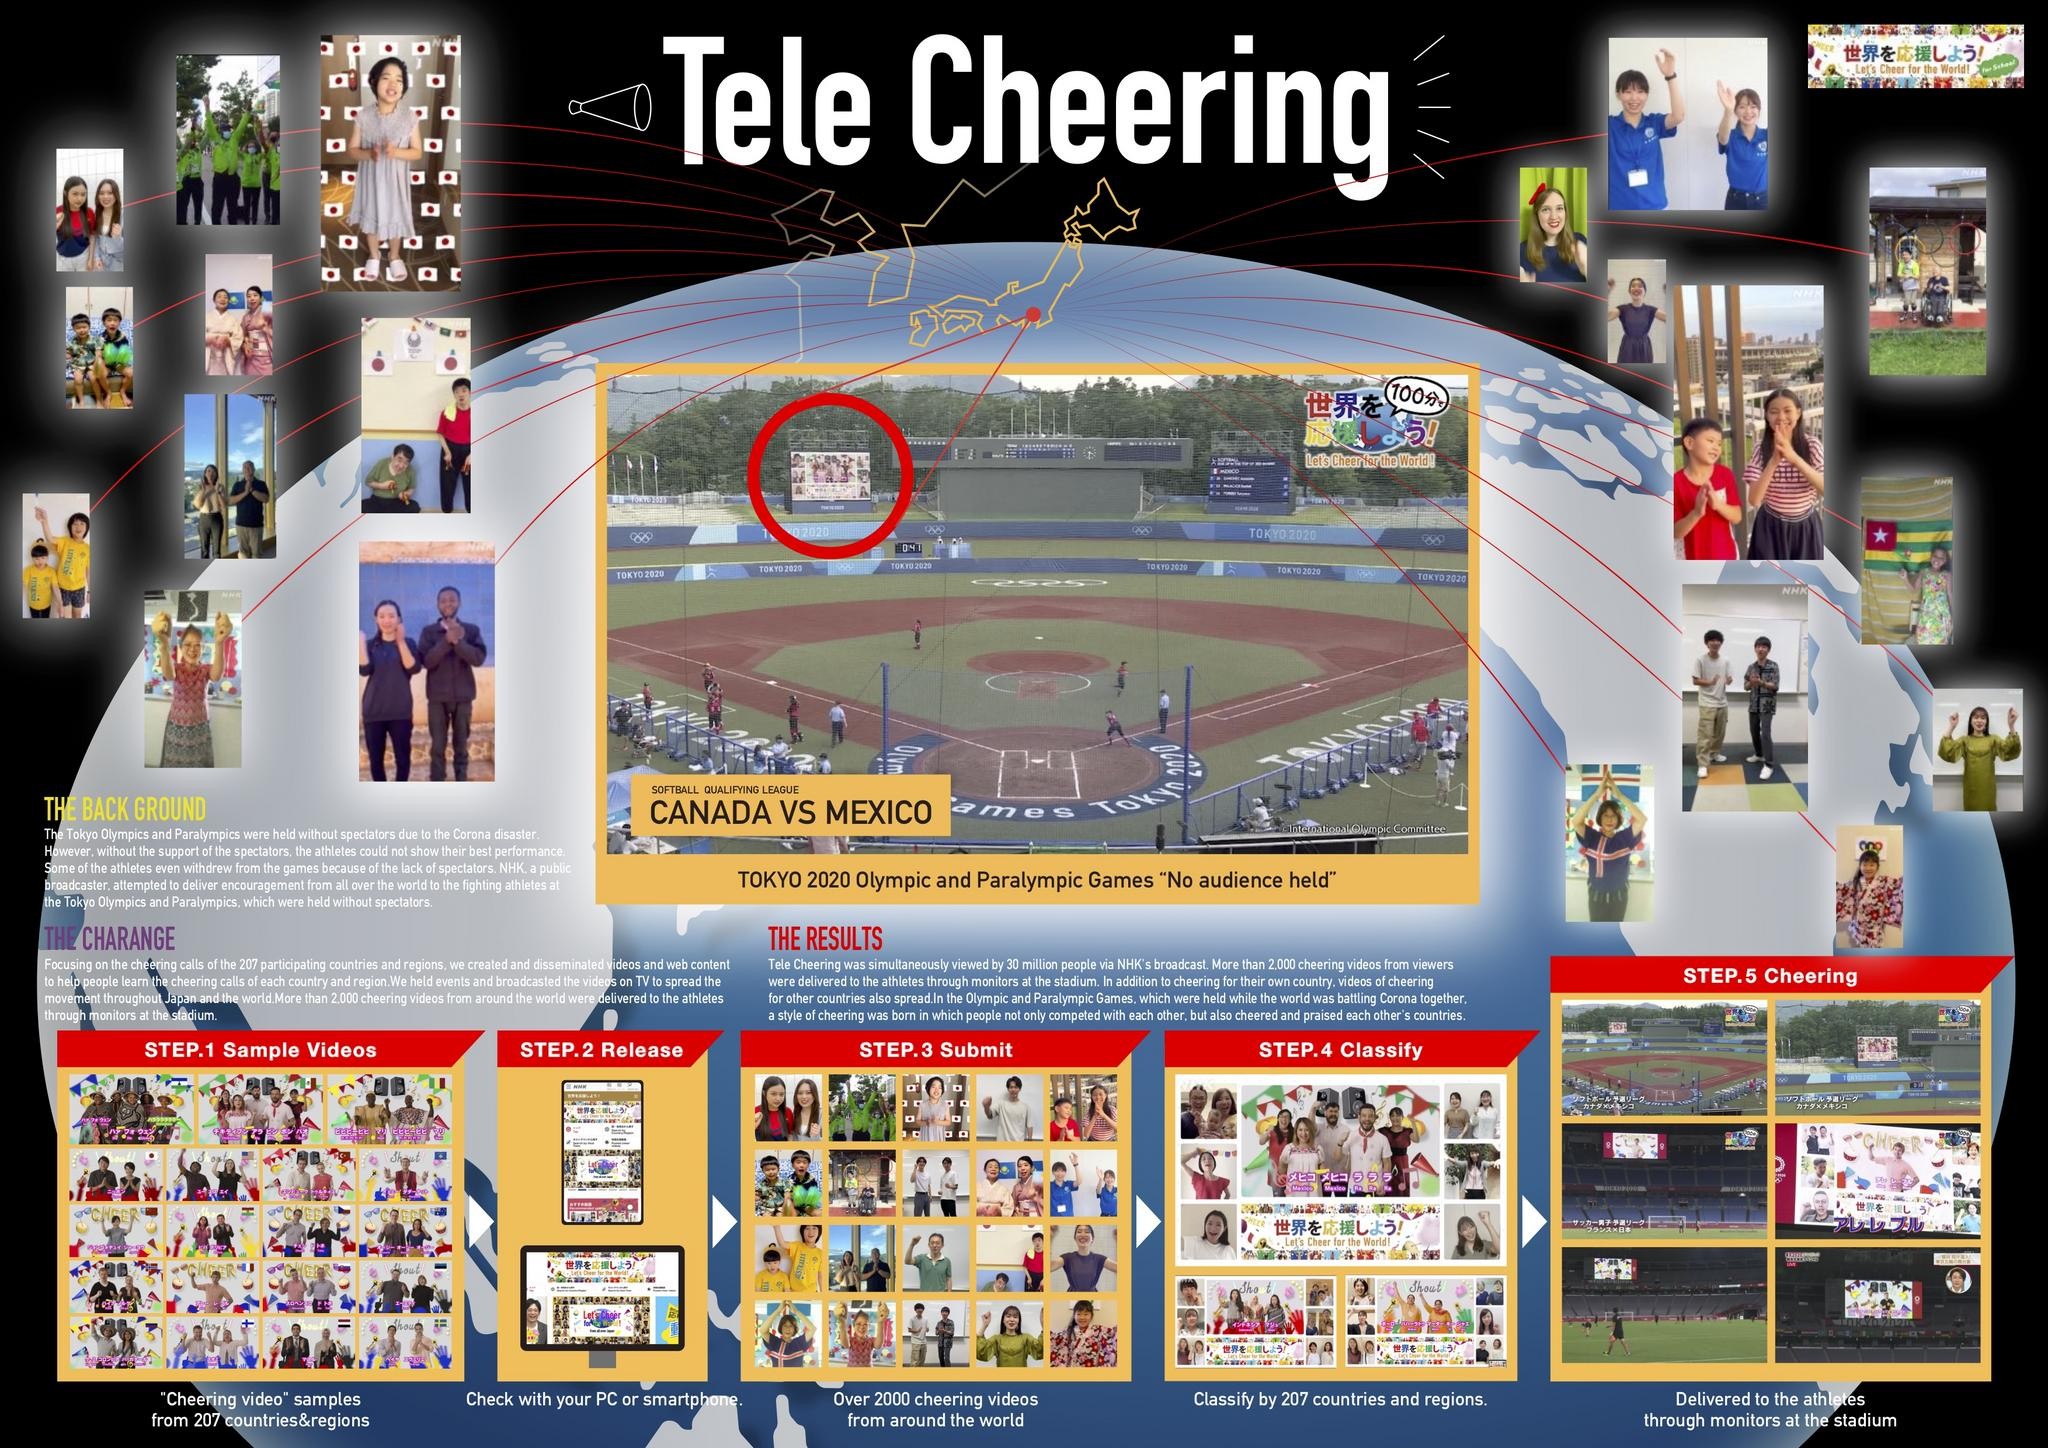 Tele cheering